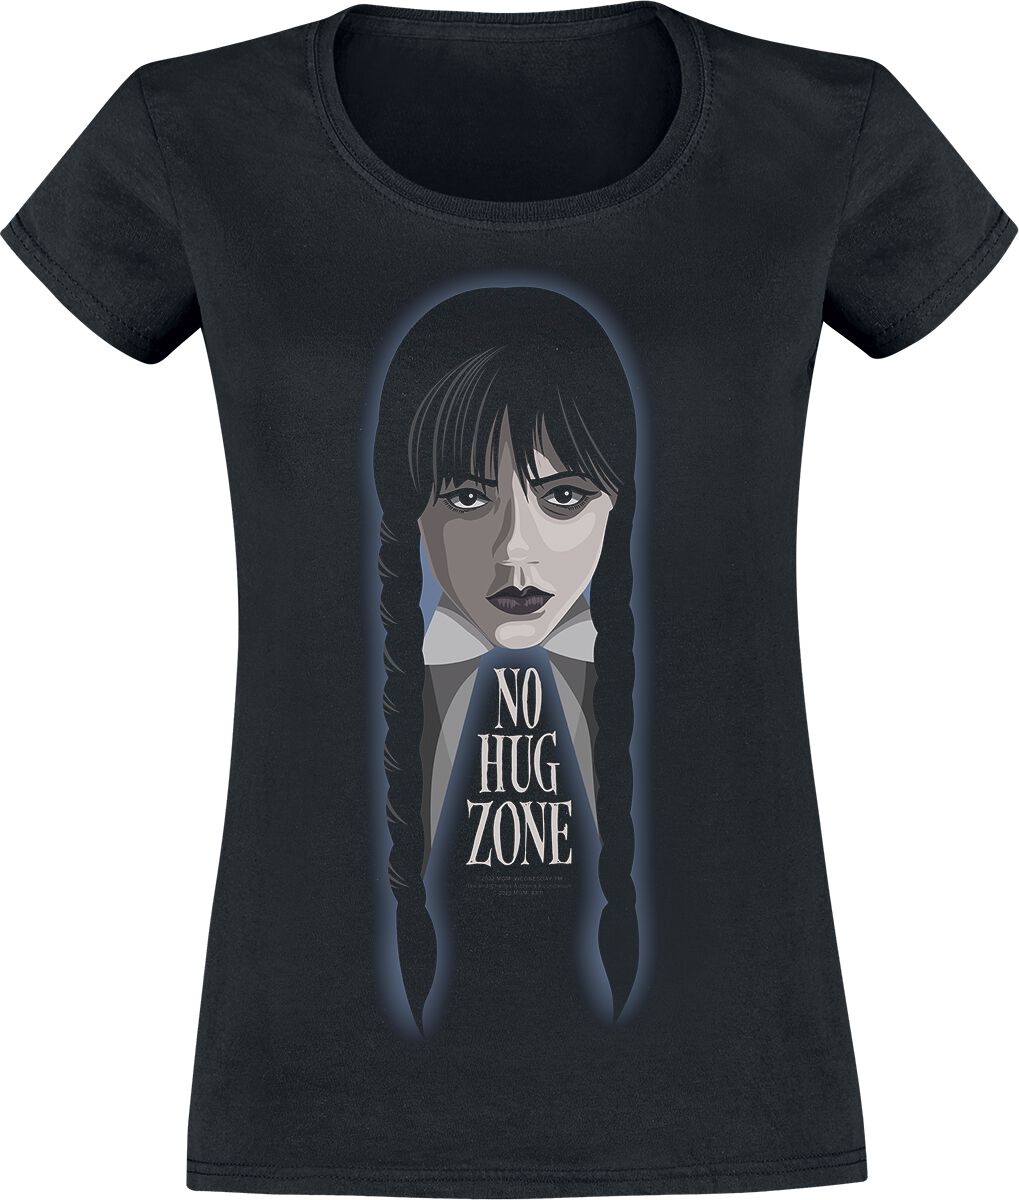 T-Shirt Manches courtes de Wednesday - No Hug Zone - S à XXL - pour Femme - noir